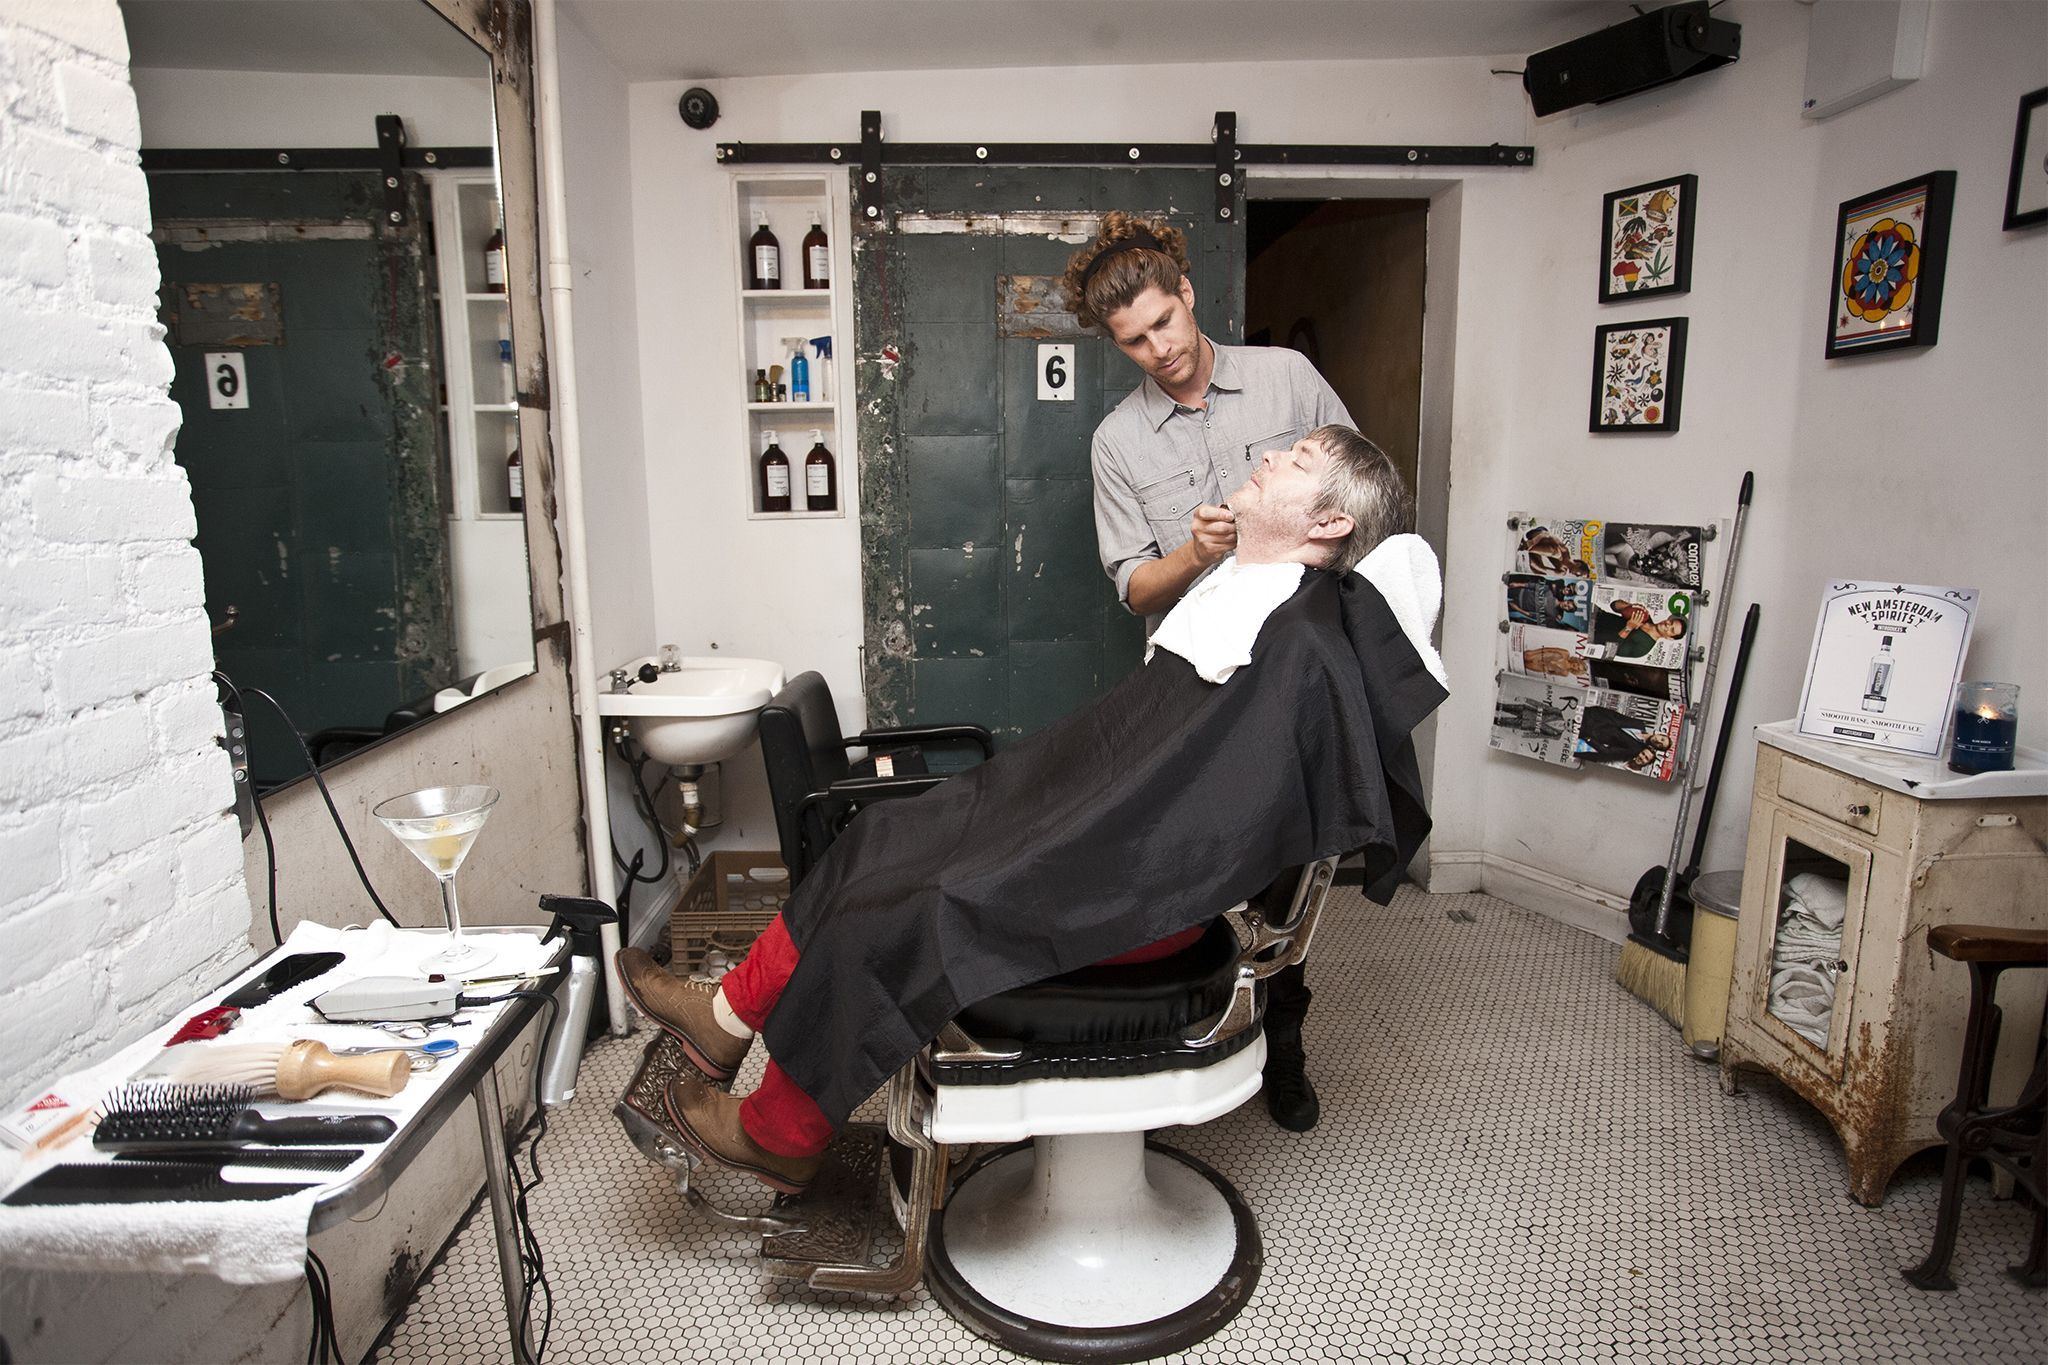 Terminator reccomend Ladies facial shave photos in barbershop